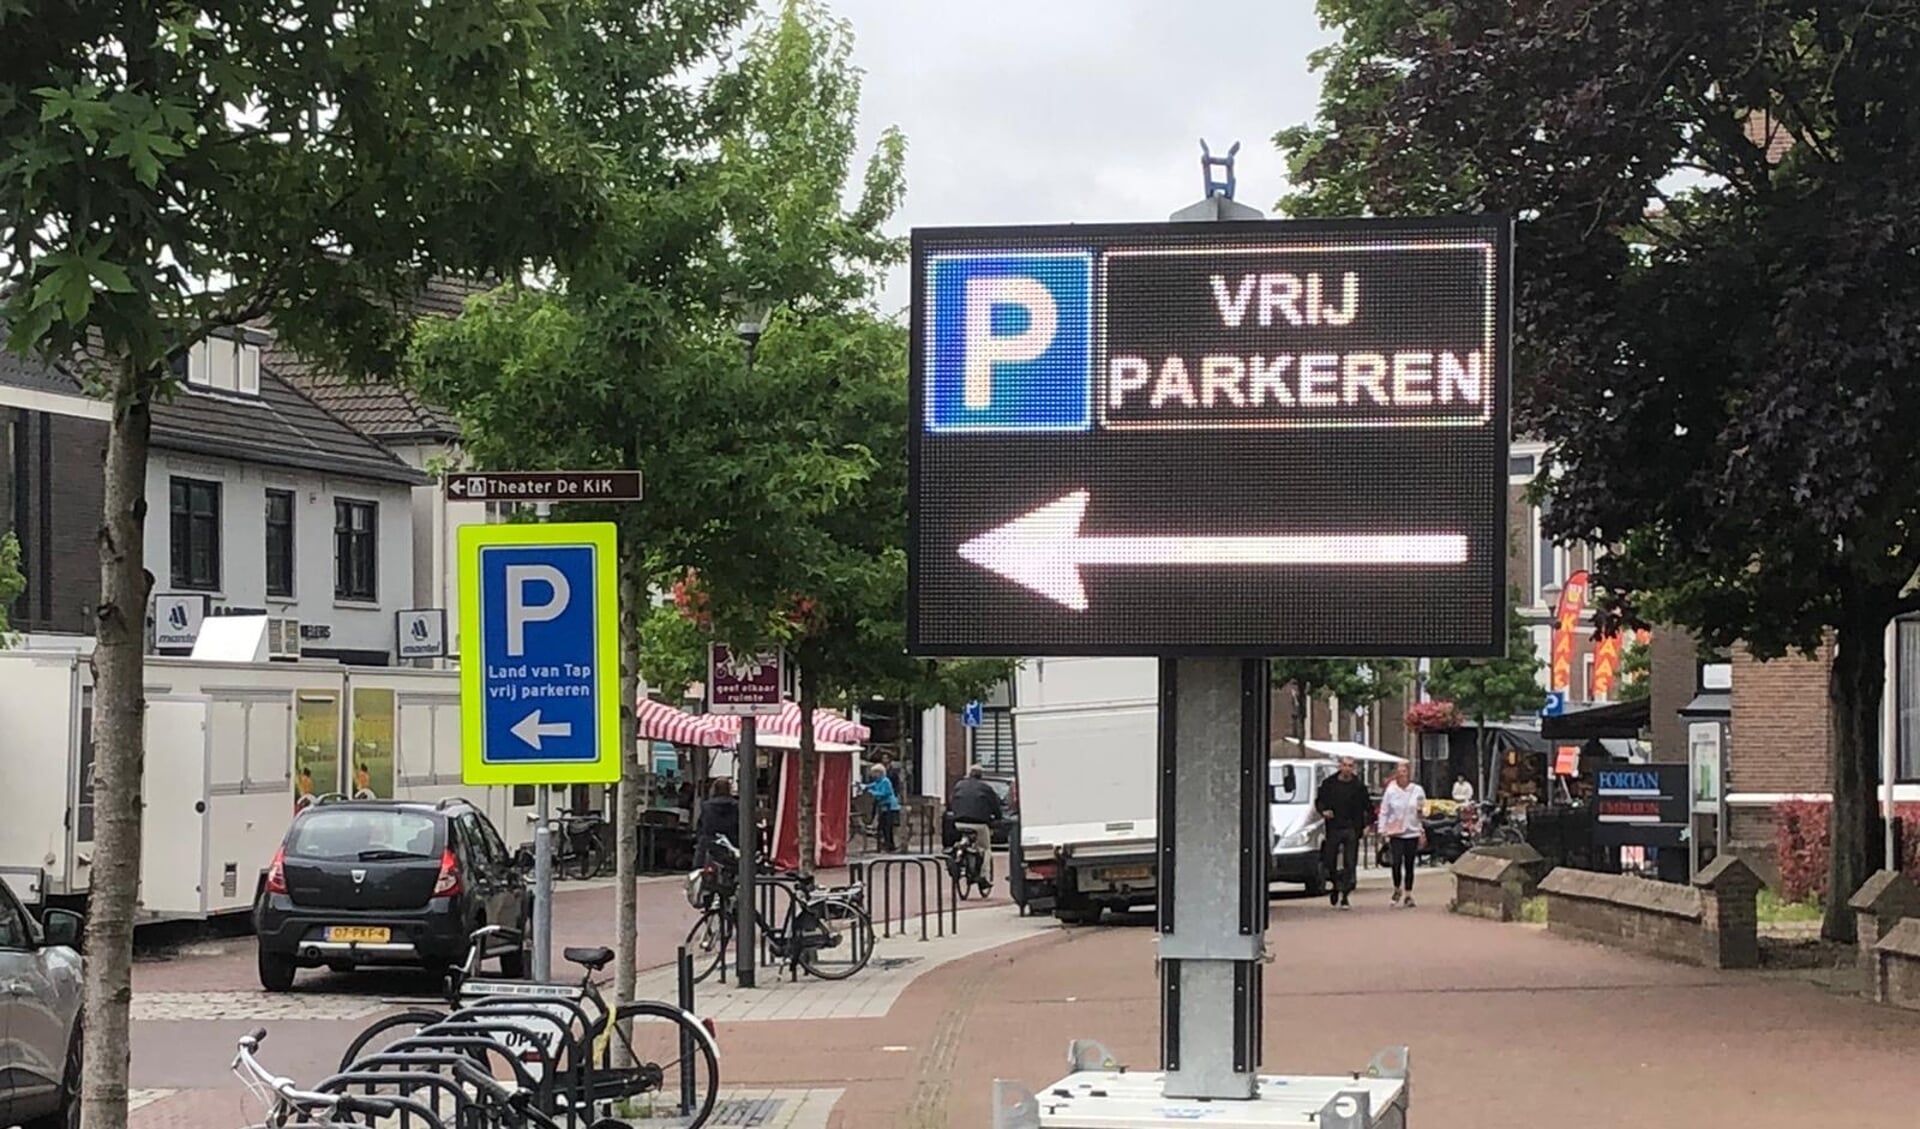 Verwijzingsbord parkeren Land van Tap. (foto: Paul te Wierike)